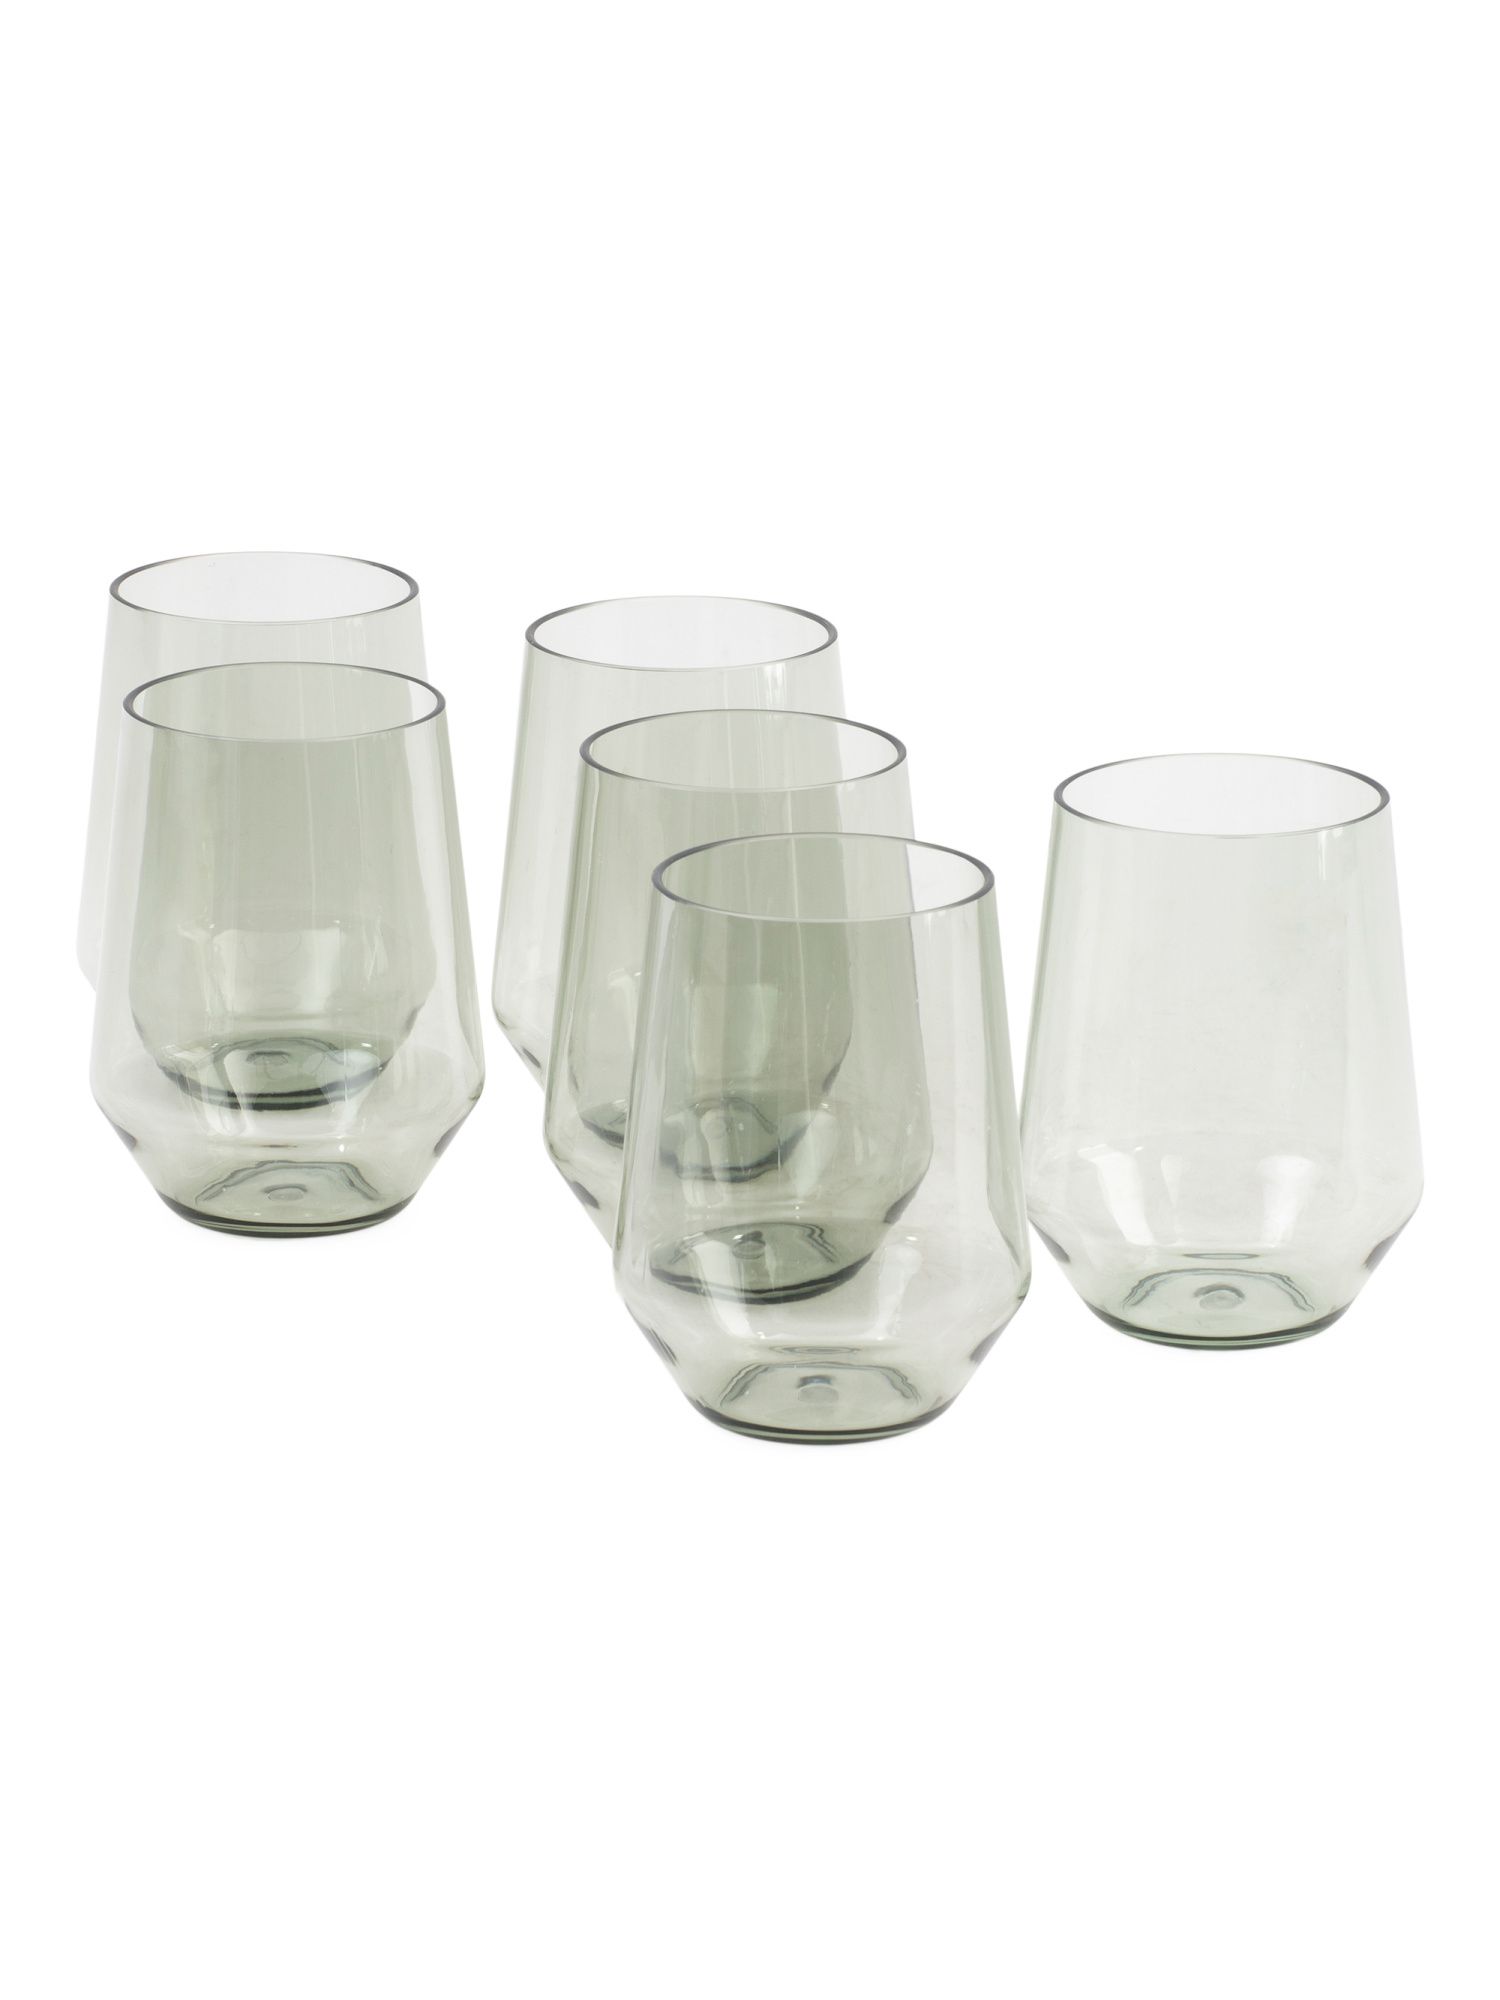 6pk Stemless Sole Tritan Wine Glass Set | TJ Maxx